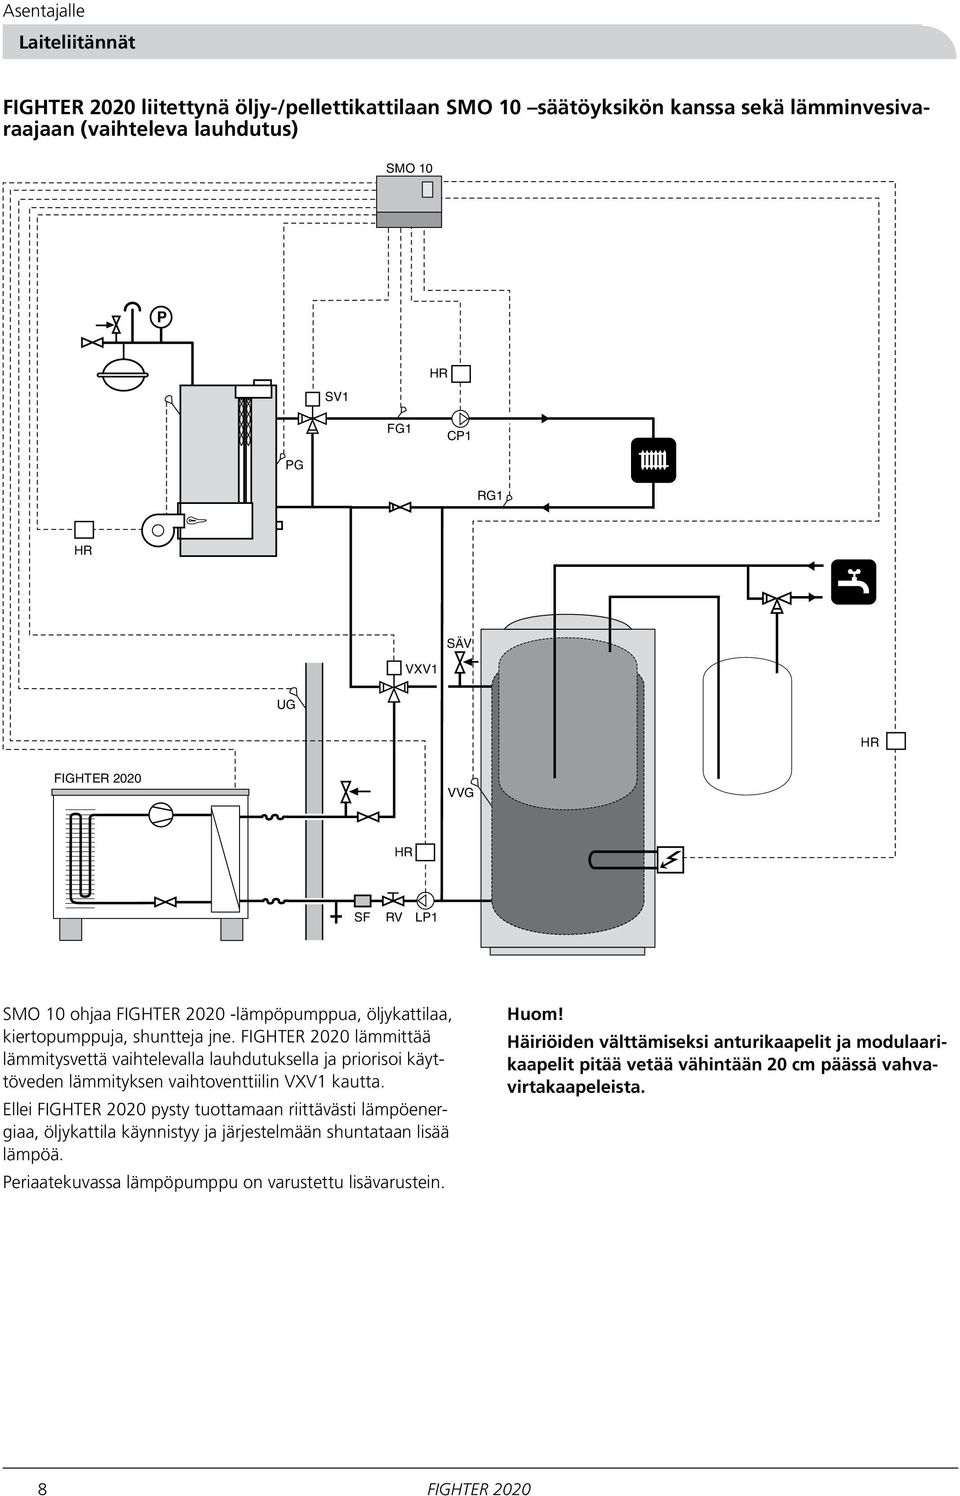 FIGHTER 00 lämmittää lämmitysvettä vaihtelevalla lauhdutuksella ja priorisoi käyttöveden lämmityksen vaihtoventtiilin VXV kautta.